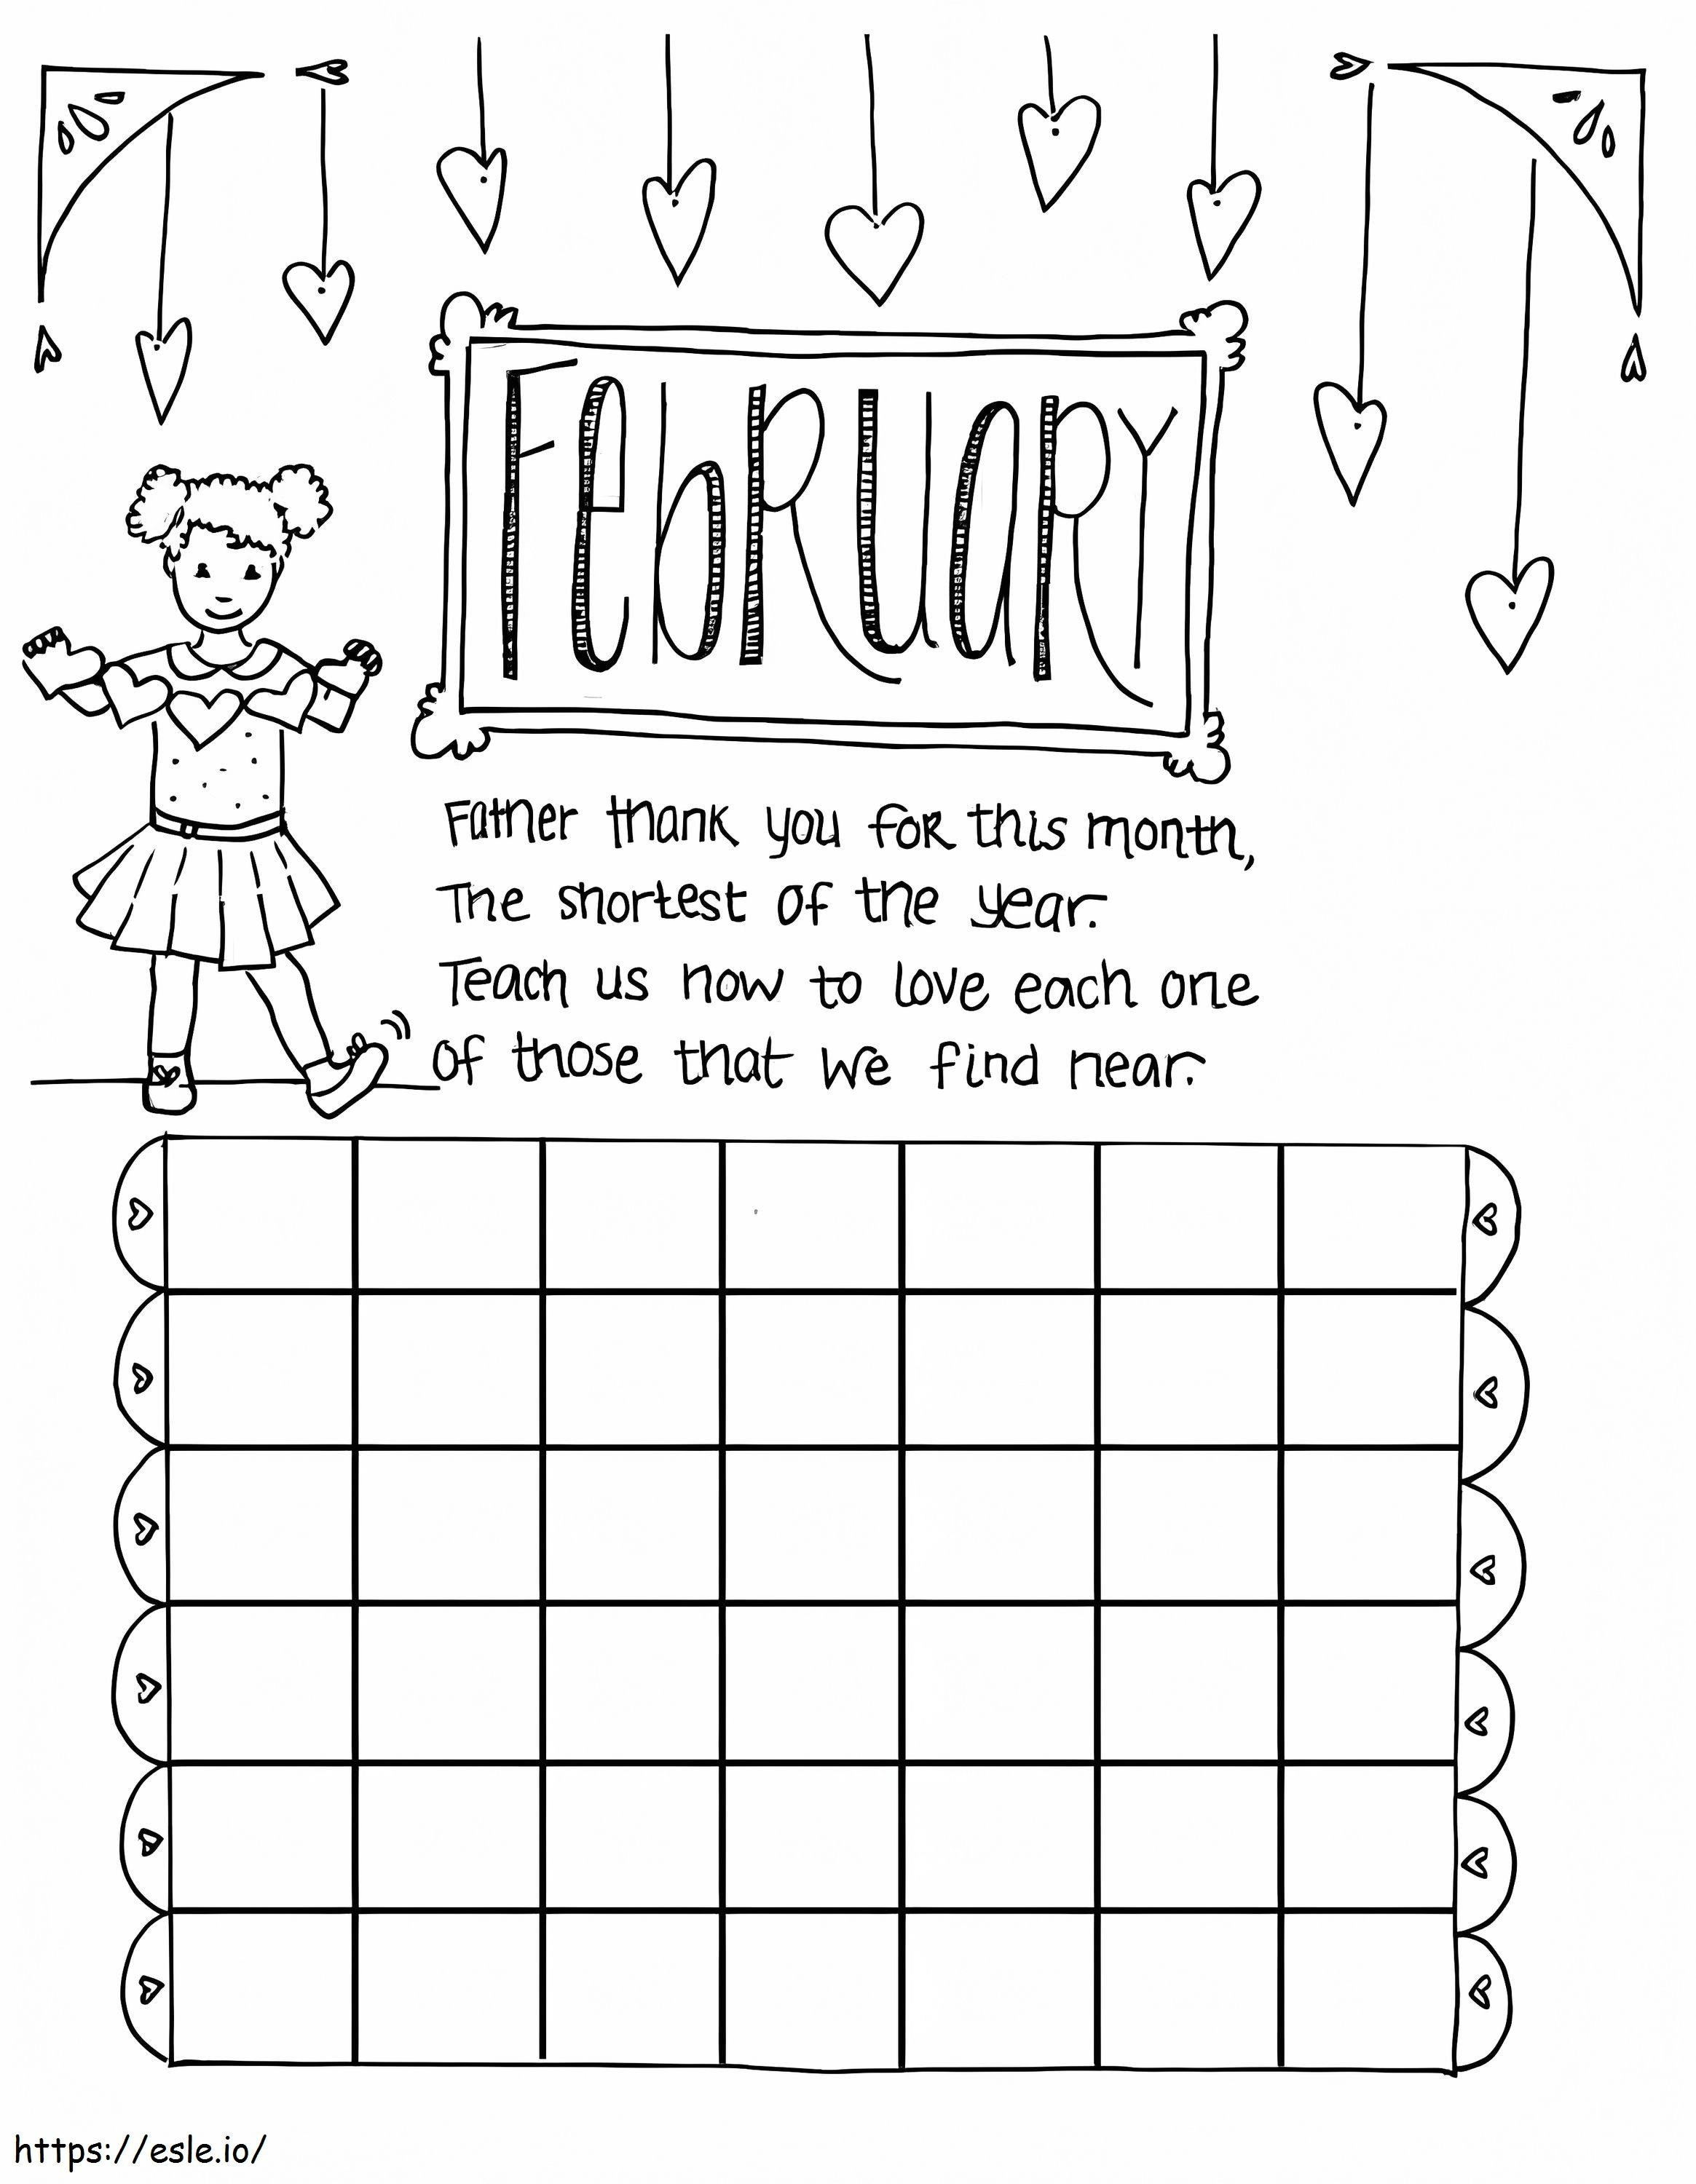 Calendario Infantil De Febrero para colorear